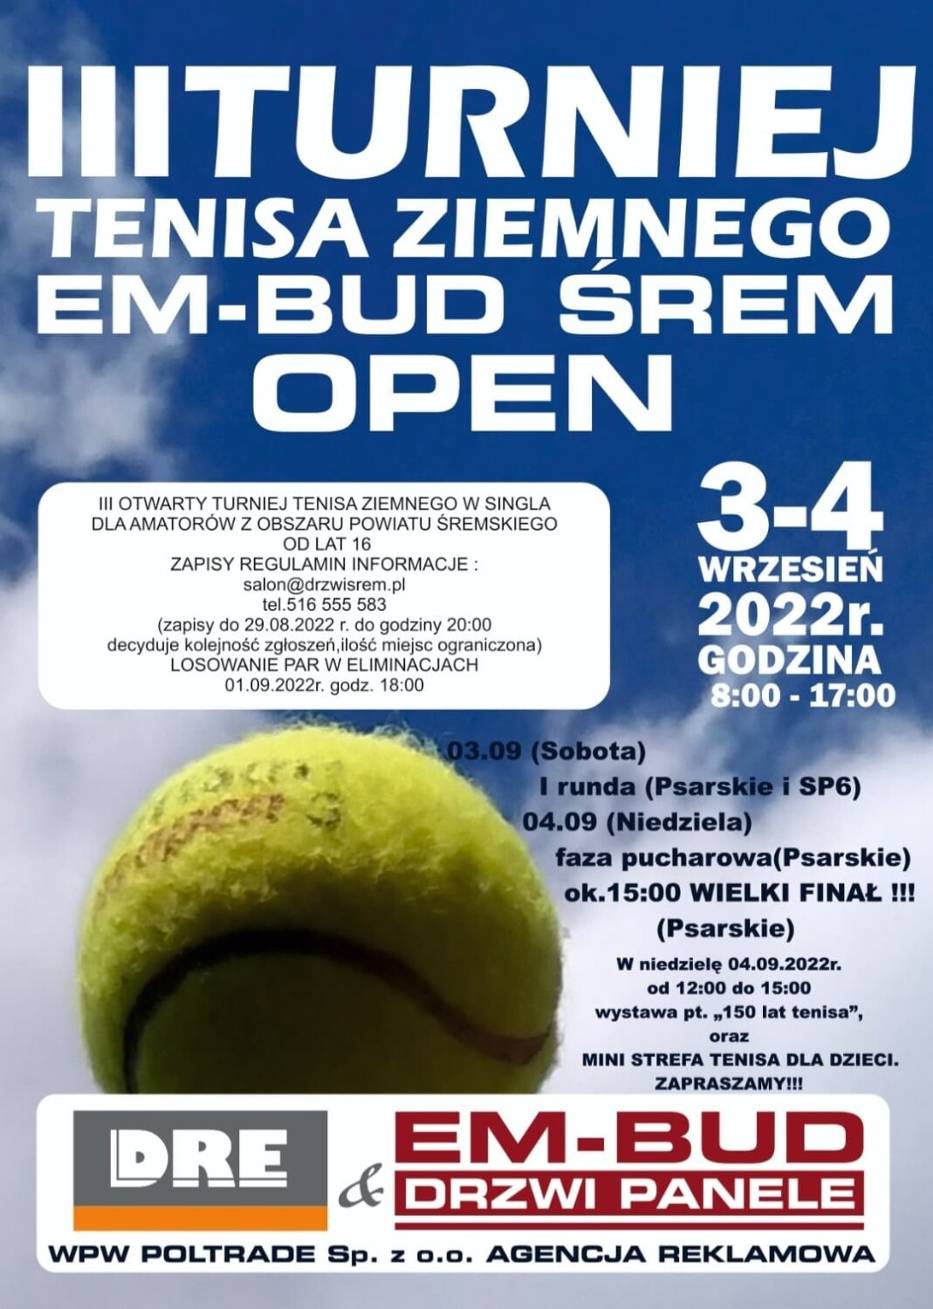 Tenisowe święto w naszym mieście, czyli trzecia odsłona turnieju tenisa ziemnego EM-BUD Śrem Open